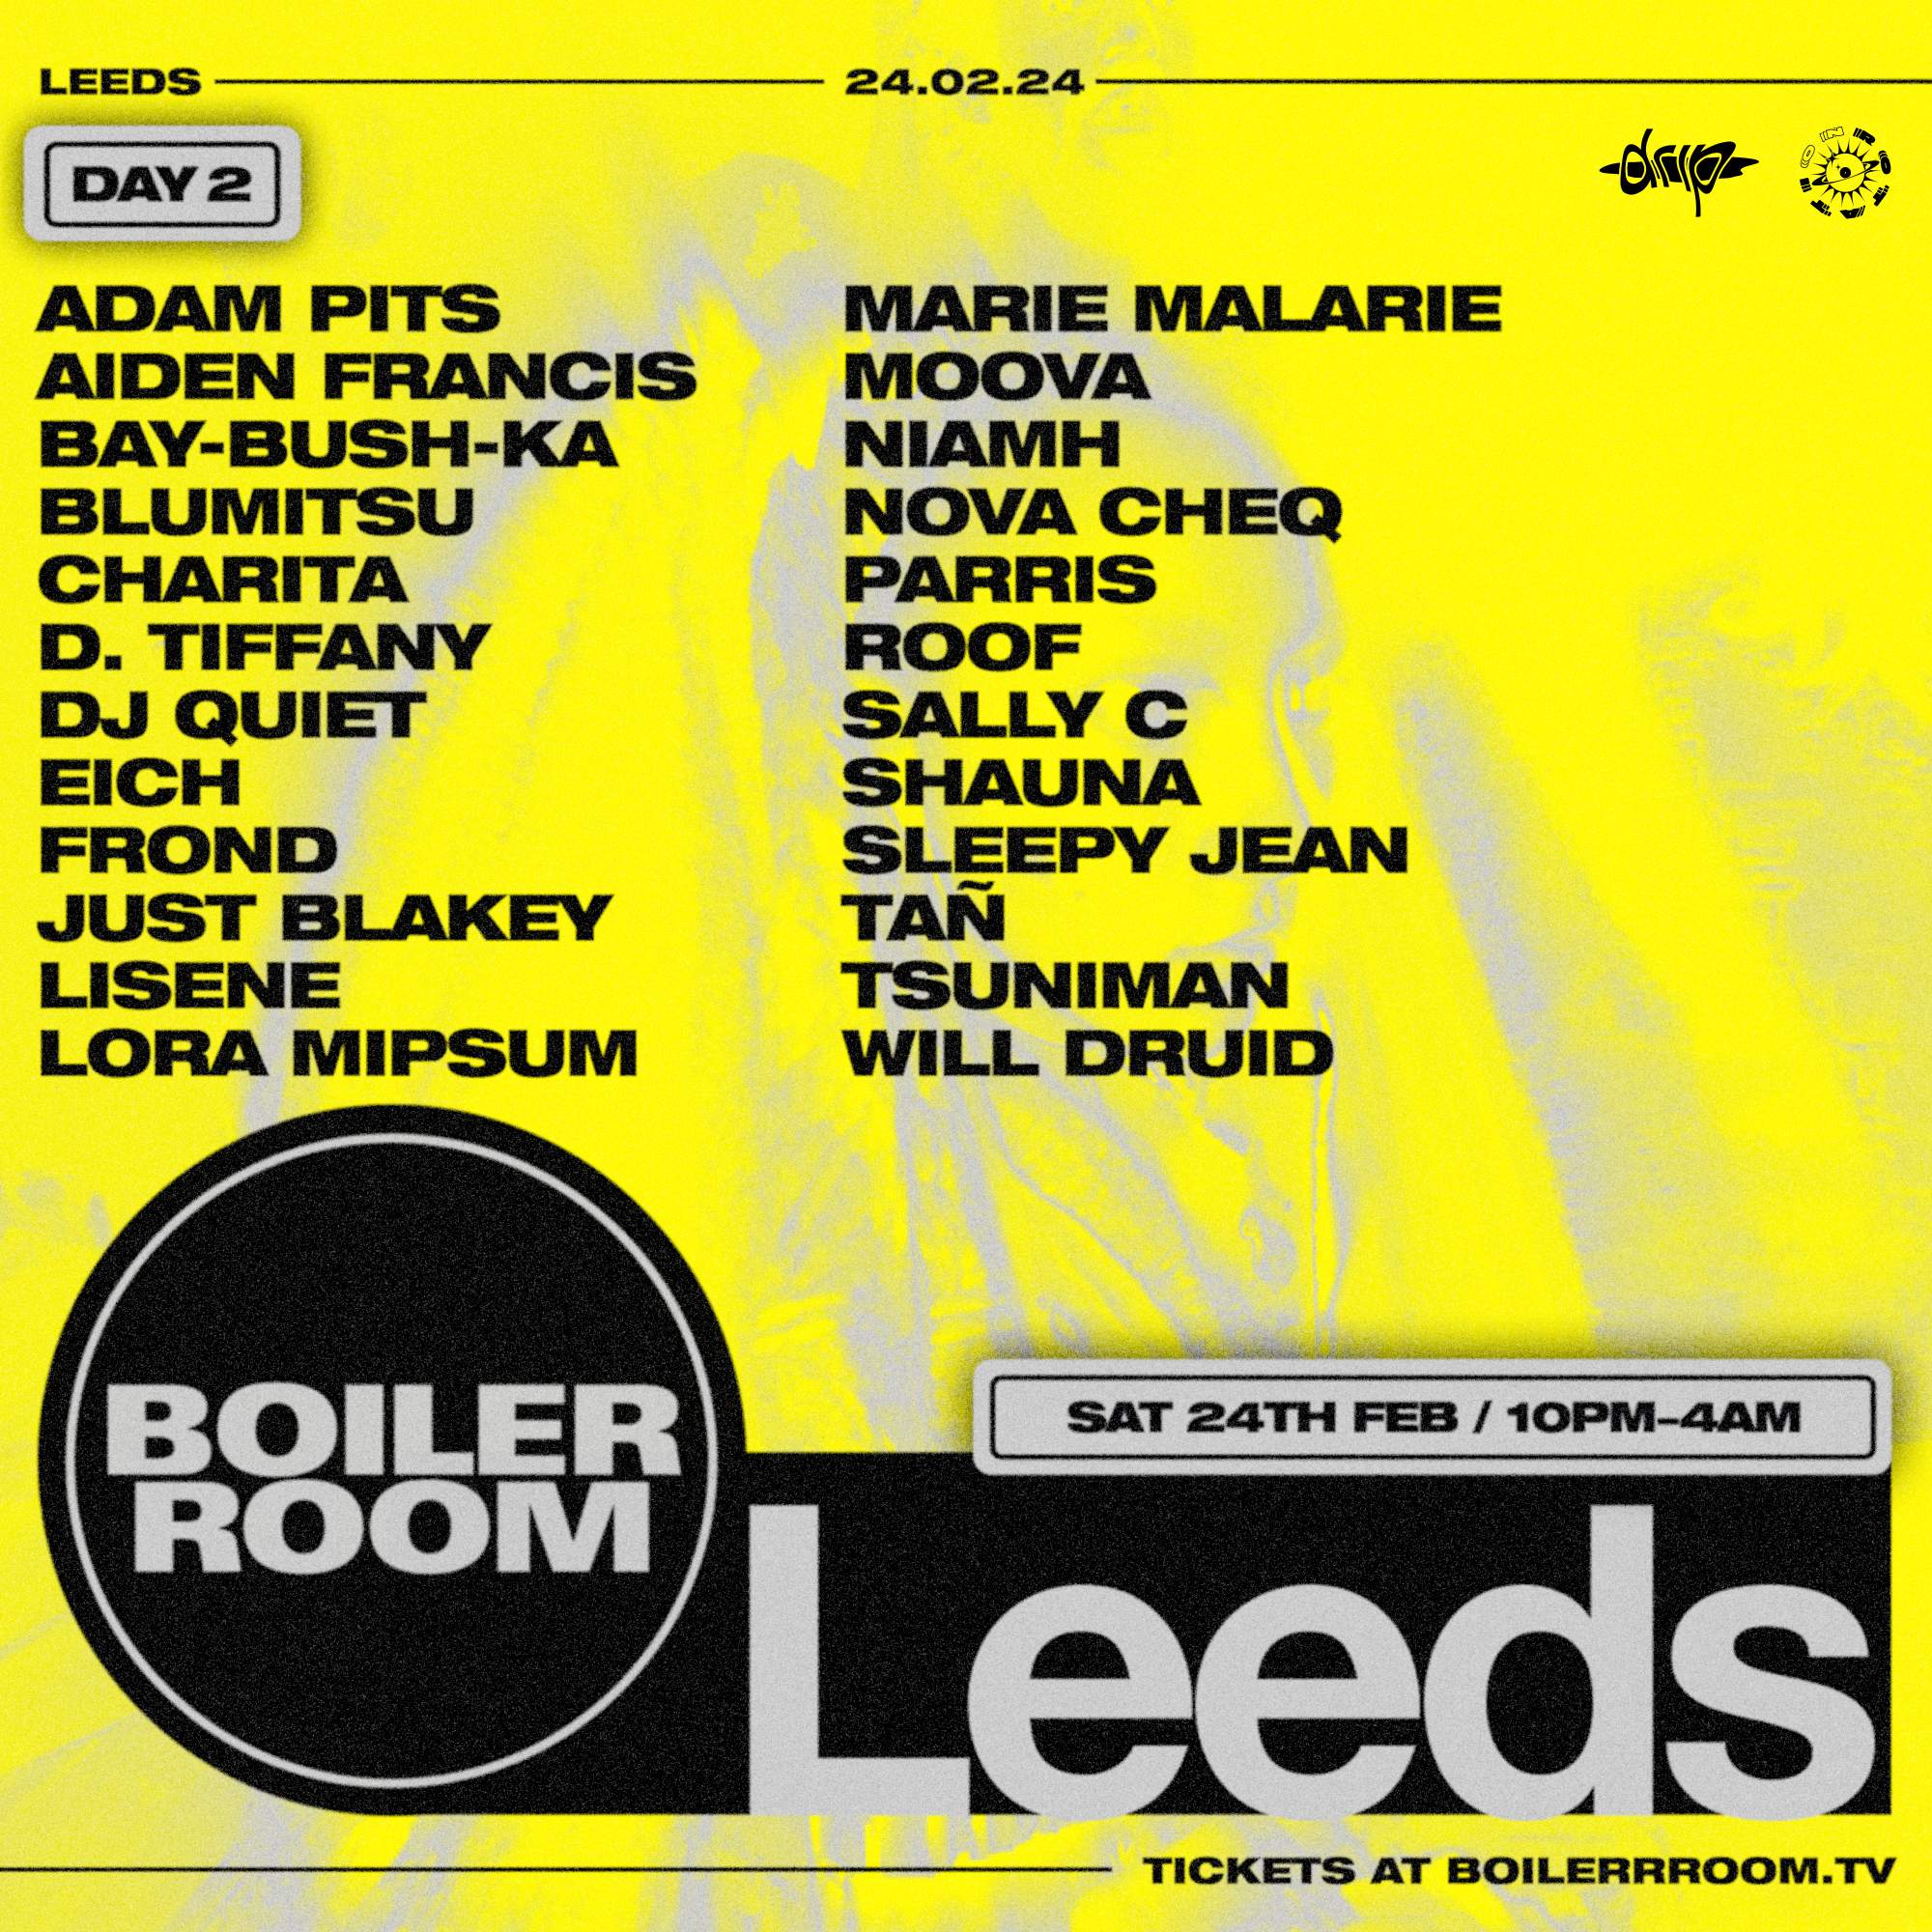 Boiler Room: Leeds | Saturday - フライヤー表